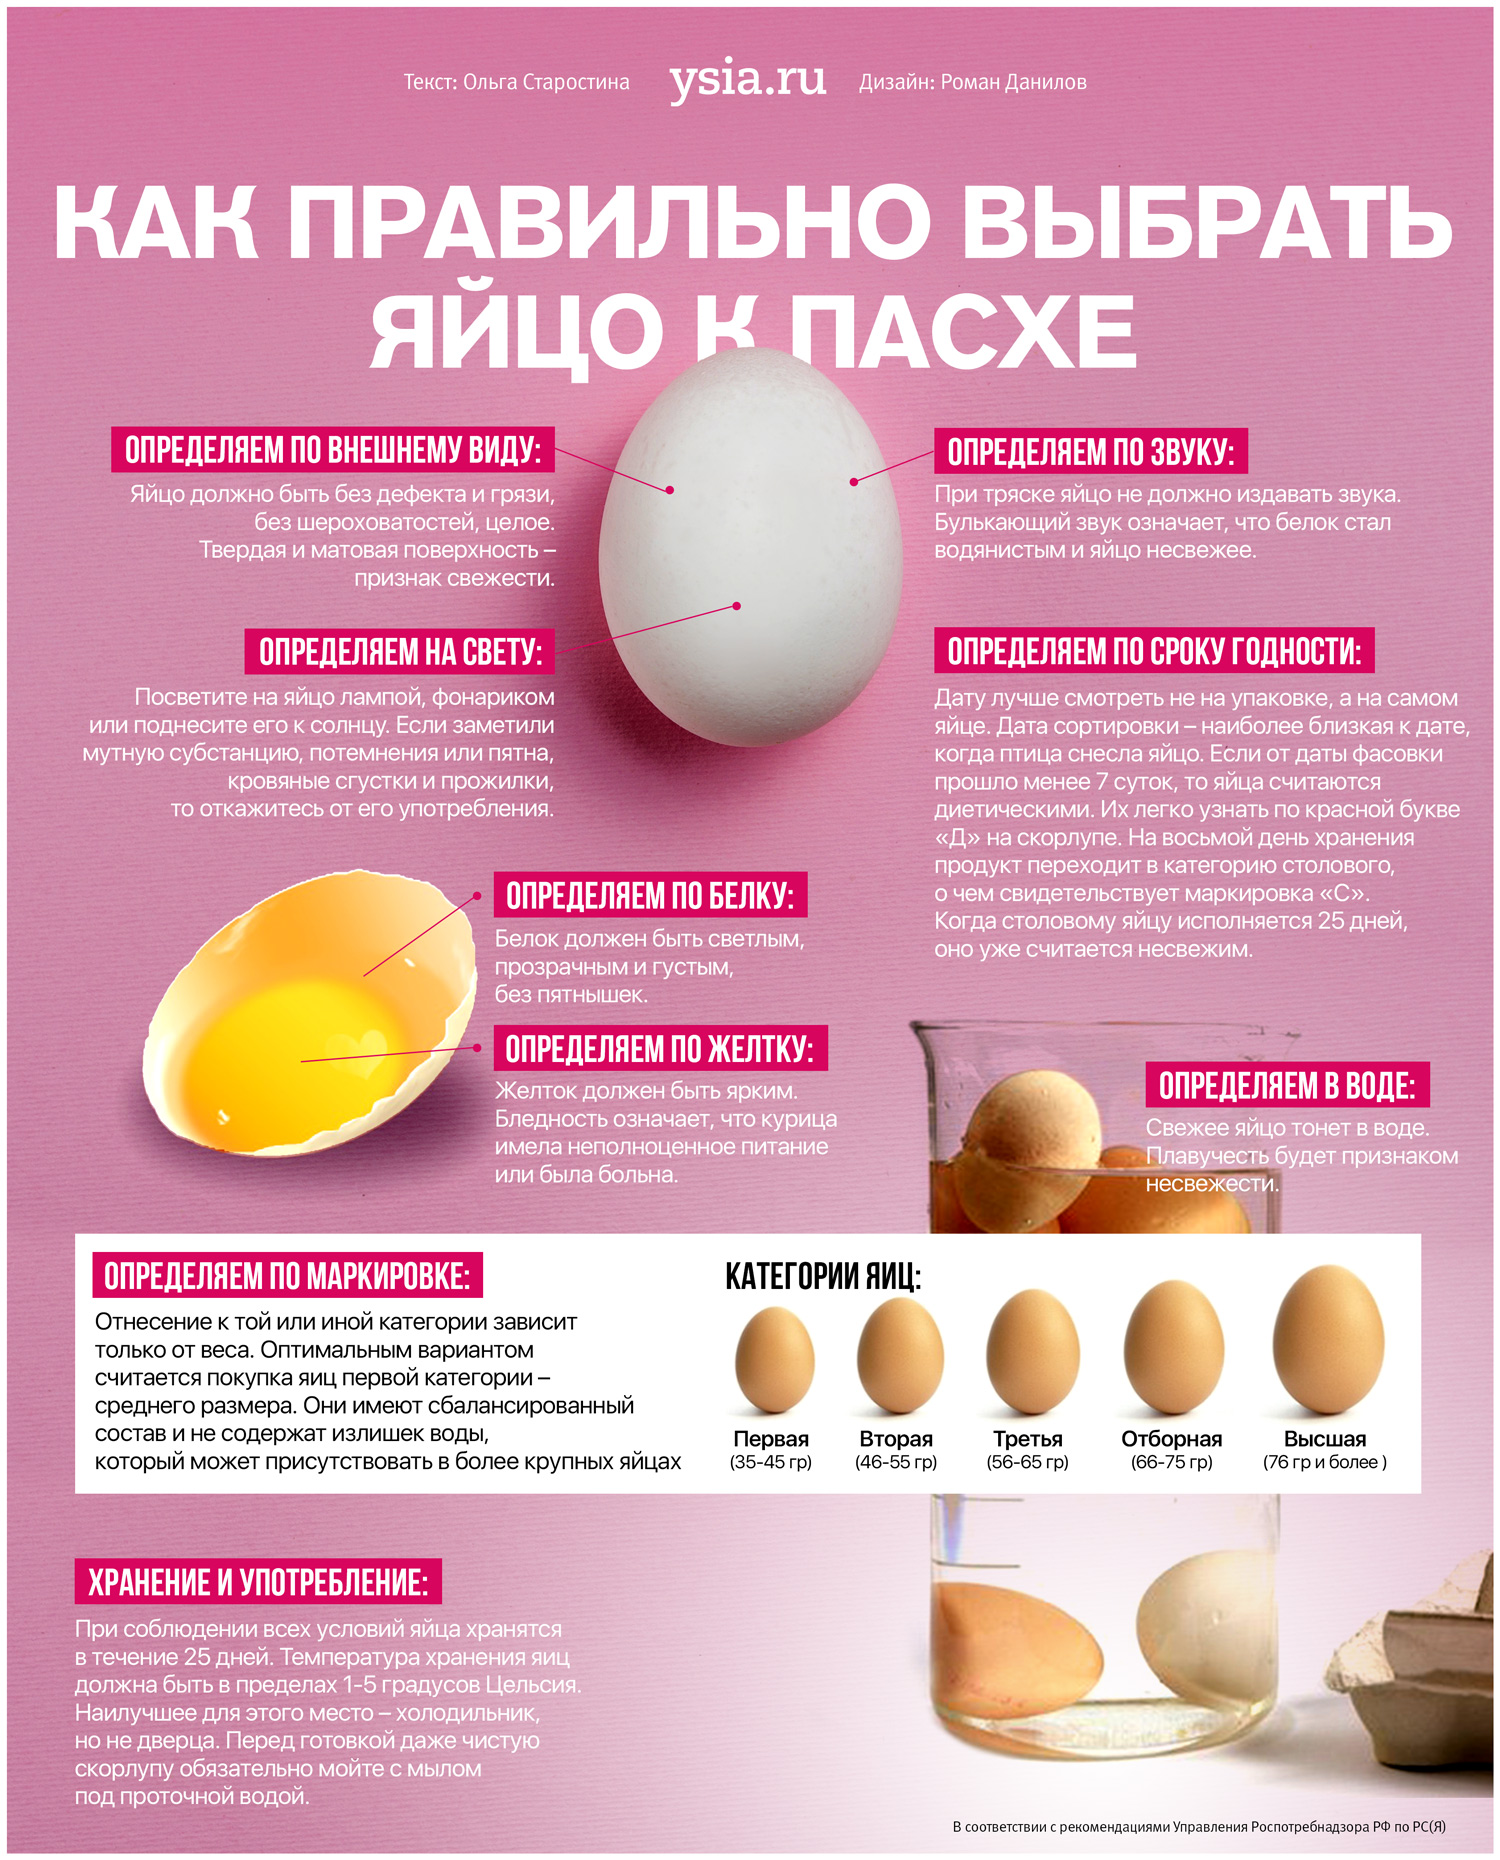 Как отличить яйца. Как выбрать яйца. Как правильно выбирать яйца. Инфографика яйцо. Категории яиц куриных.